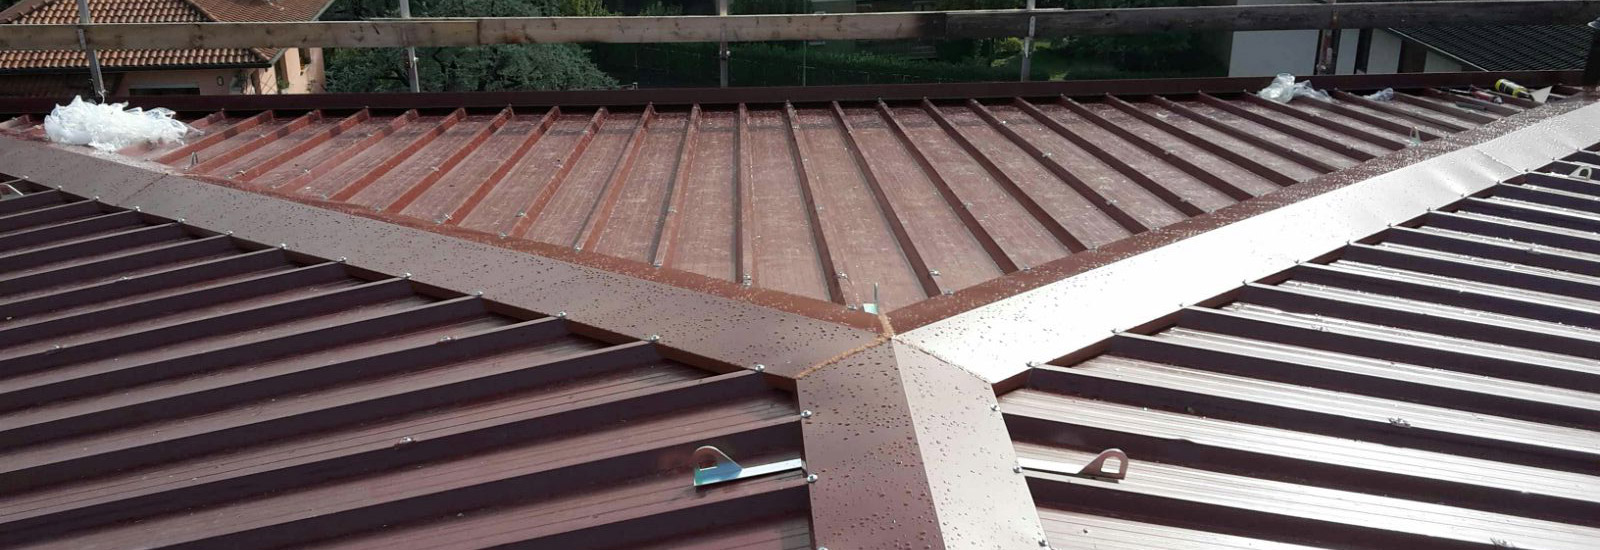 Realizzazione coperture in acciaio bergamo rifacimento e nuova realizzazione tettoie in acciaio